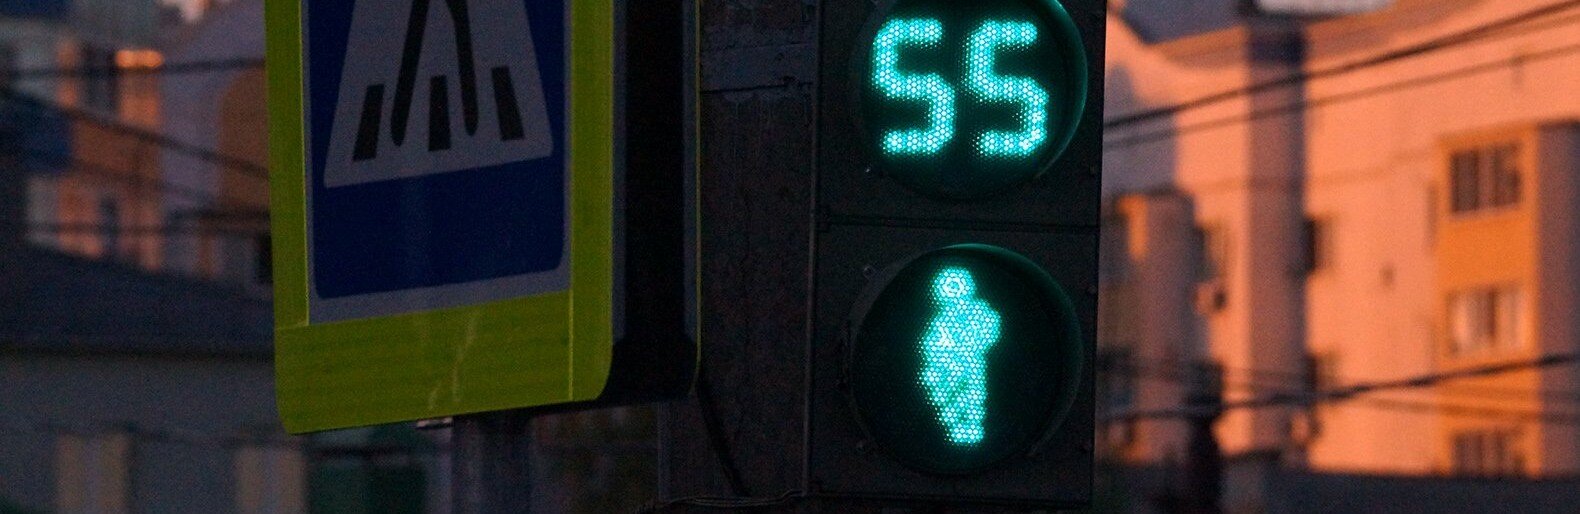 «Неужели человеческая жизнь дешевле светофора?». Жители белгородского села попросили обезопасить переход федеральной трассы